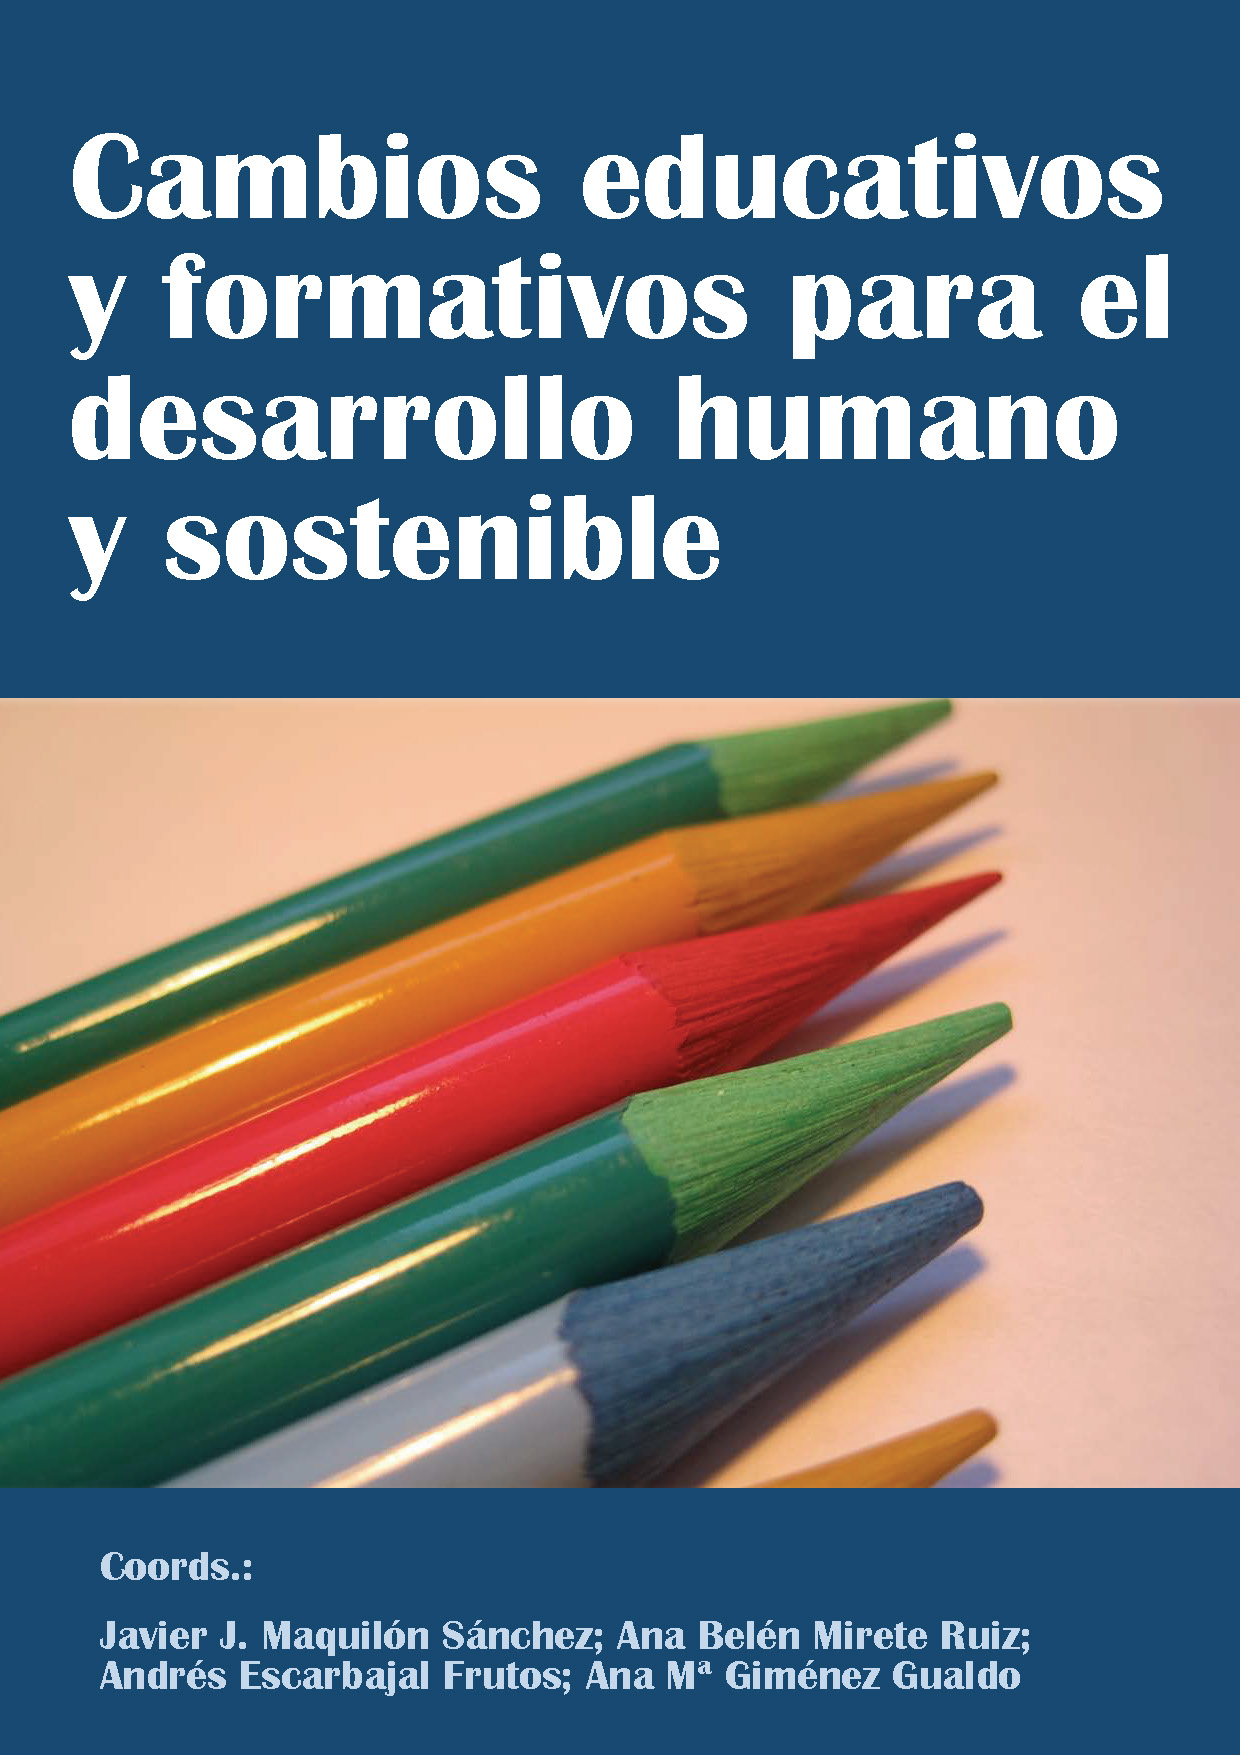 Imagen de portada del libro Cambios educativos y formativos para el desarrollo humano y sostenible